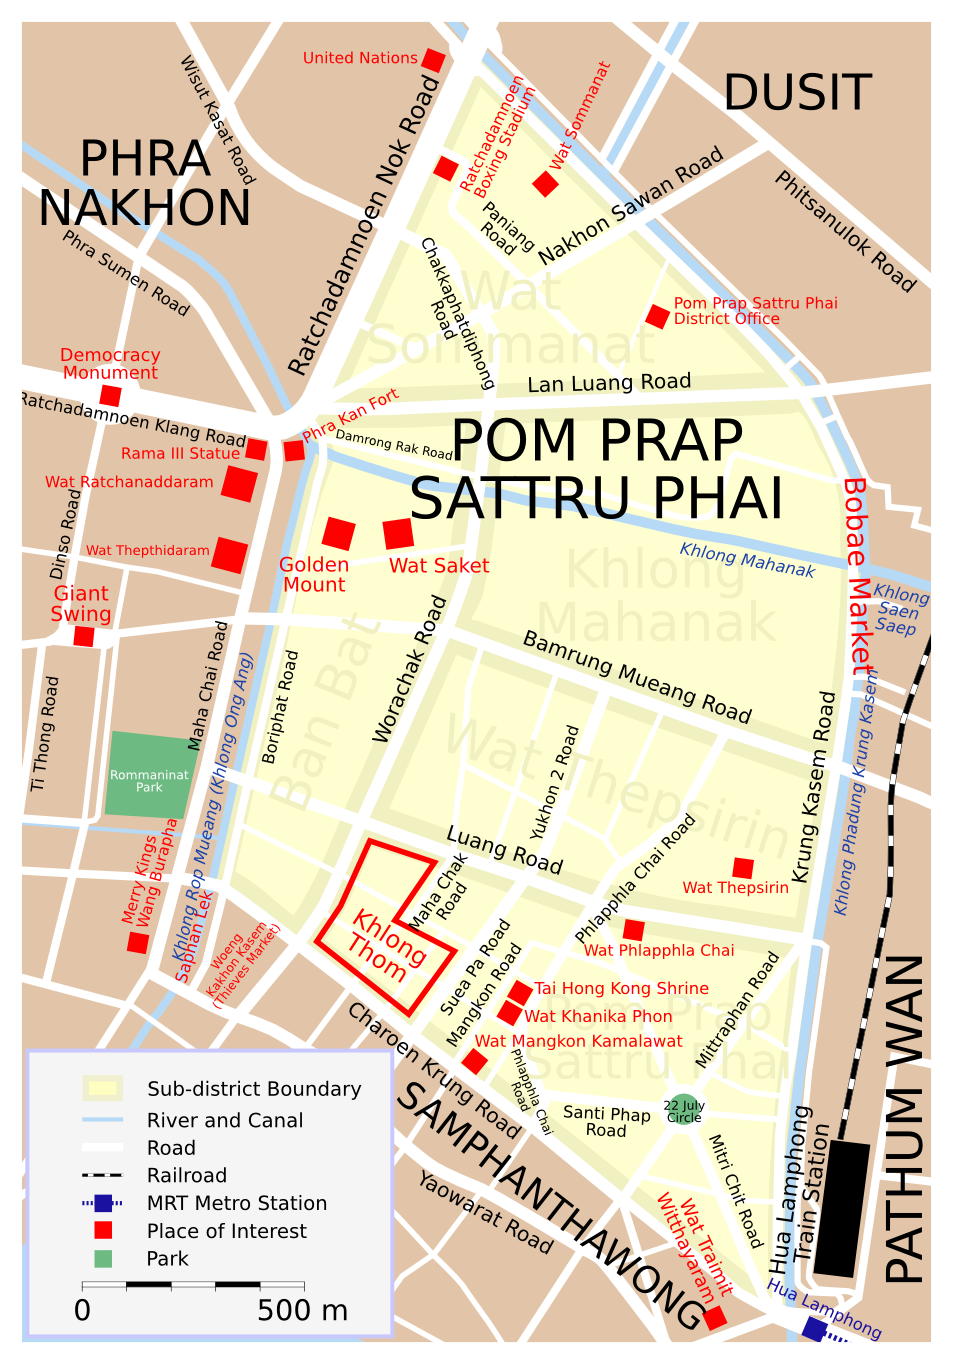 sælger bord væbner File:Map Pom Prap Sattru Phai.png - Wikimedia Commons